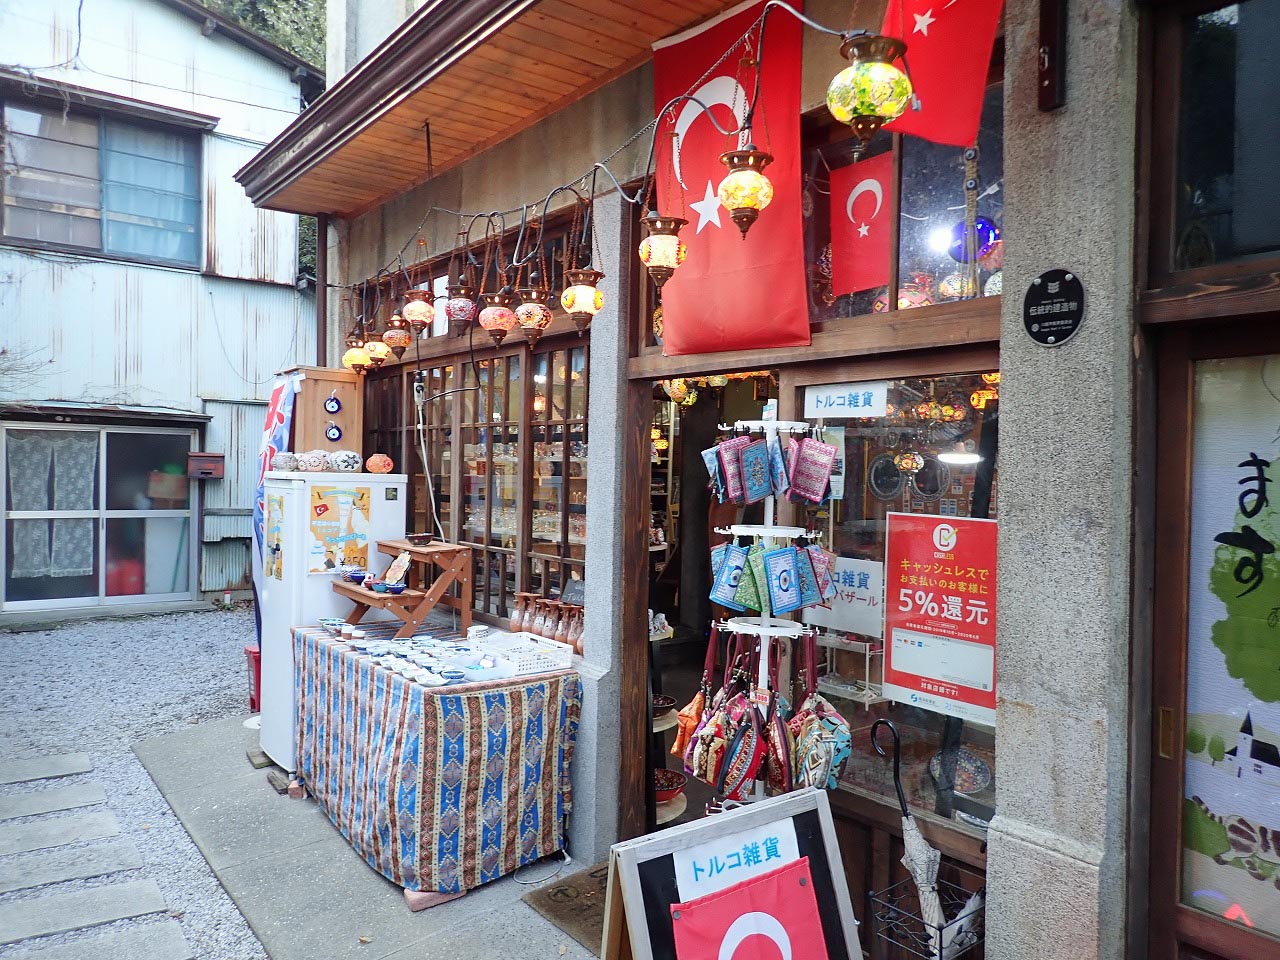 ちょっと珍しいトルコ雑貨のお店です